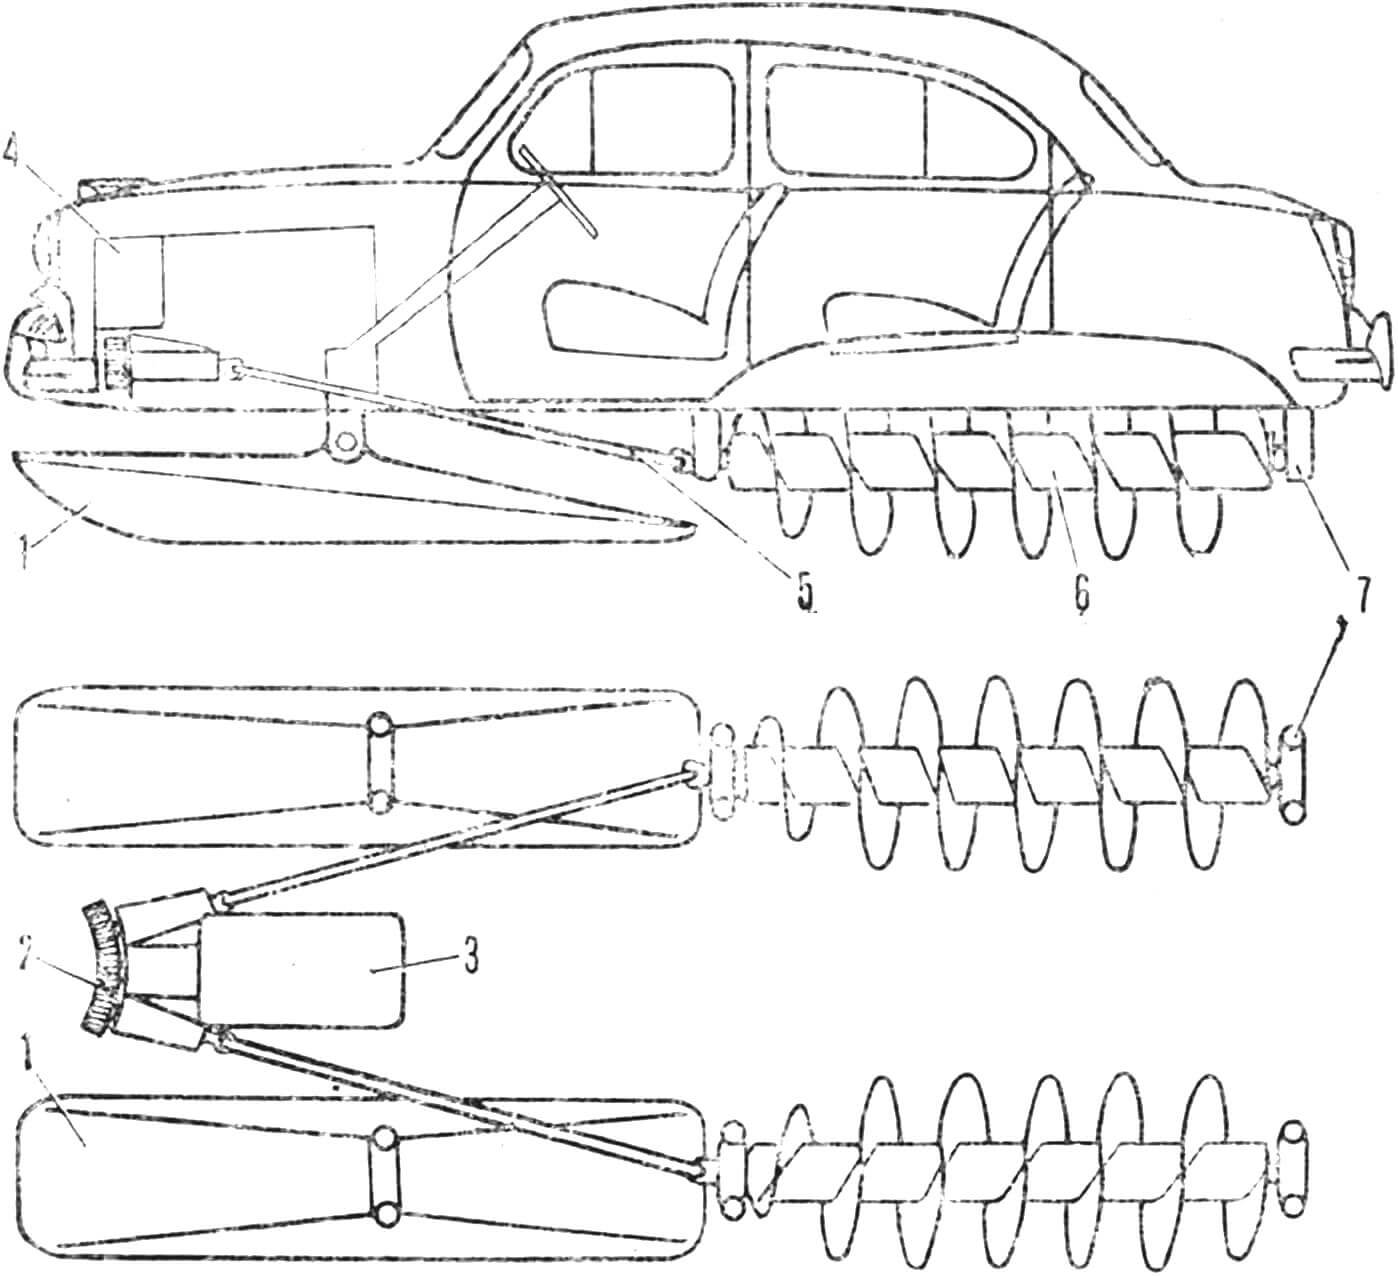 Винтовой движитель конструкции П. Г. Гаврилова и его шнекоход на базе автомобиля «Победа» М20